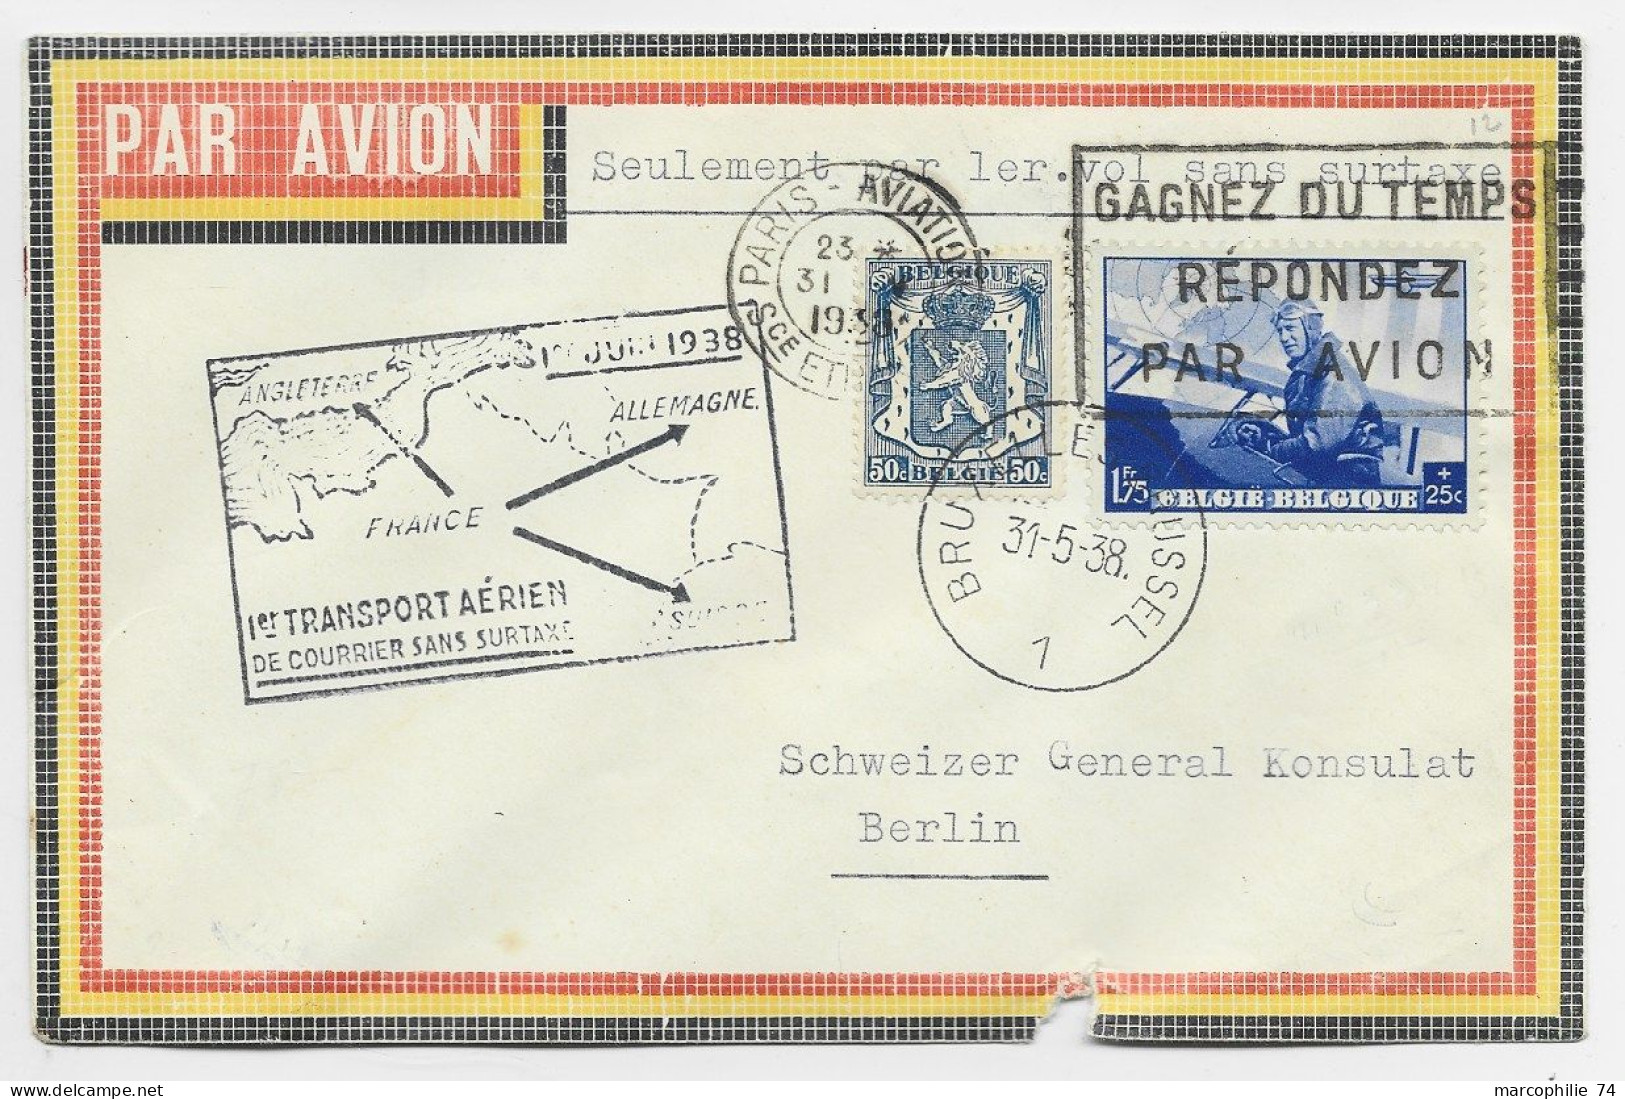 BELGIQUE SURTAXE 50C+1FR75 LETTRE COVER AVION BRUXELLES 1938 TO BERLIN VIA PARIS AVIATION - Covers & Documents